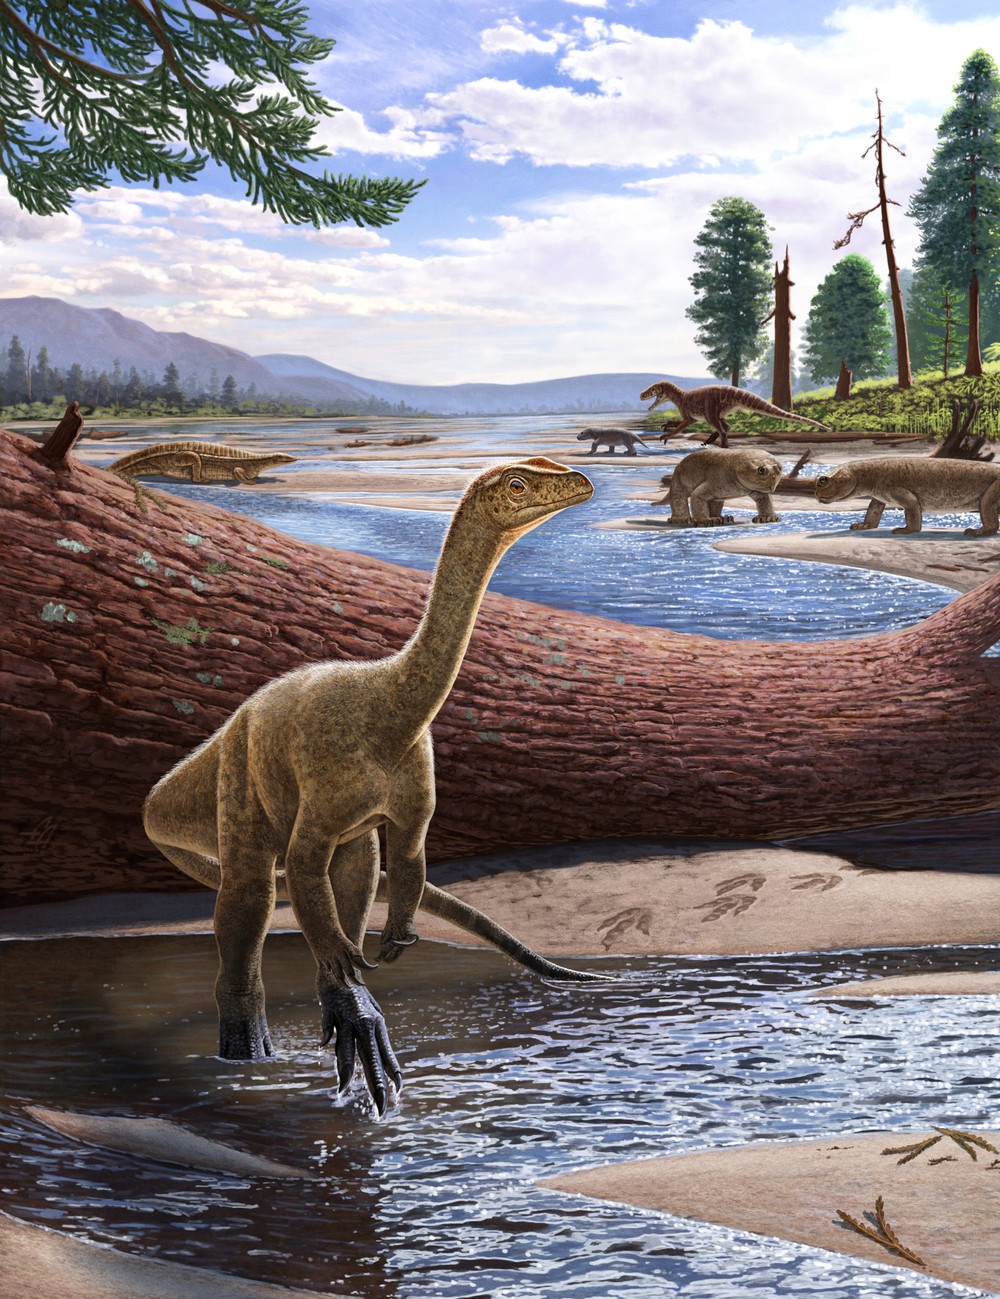 Hóa thạch khủng long hoàn chỉnh và lâu đời nhất của châu Phi được tìm thấy ở Zimbabwe - Ảnh 4.